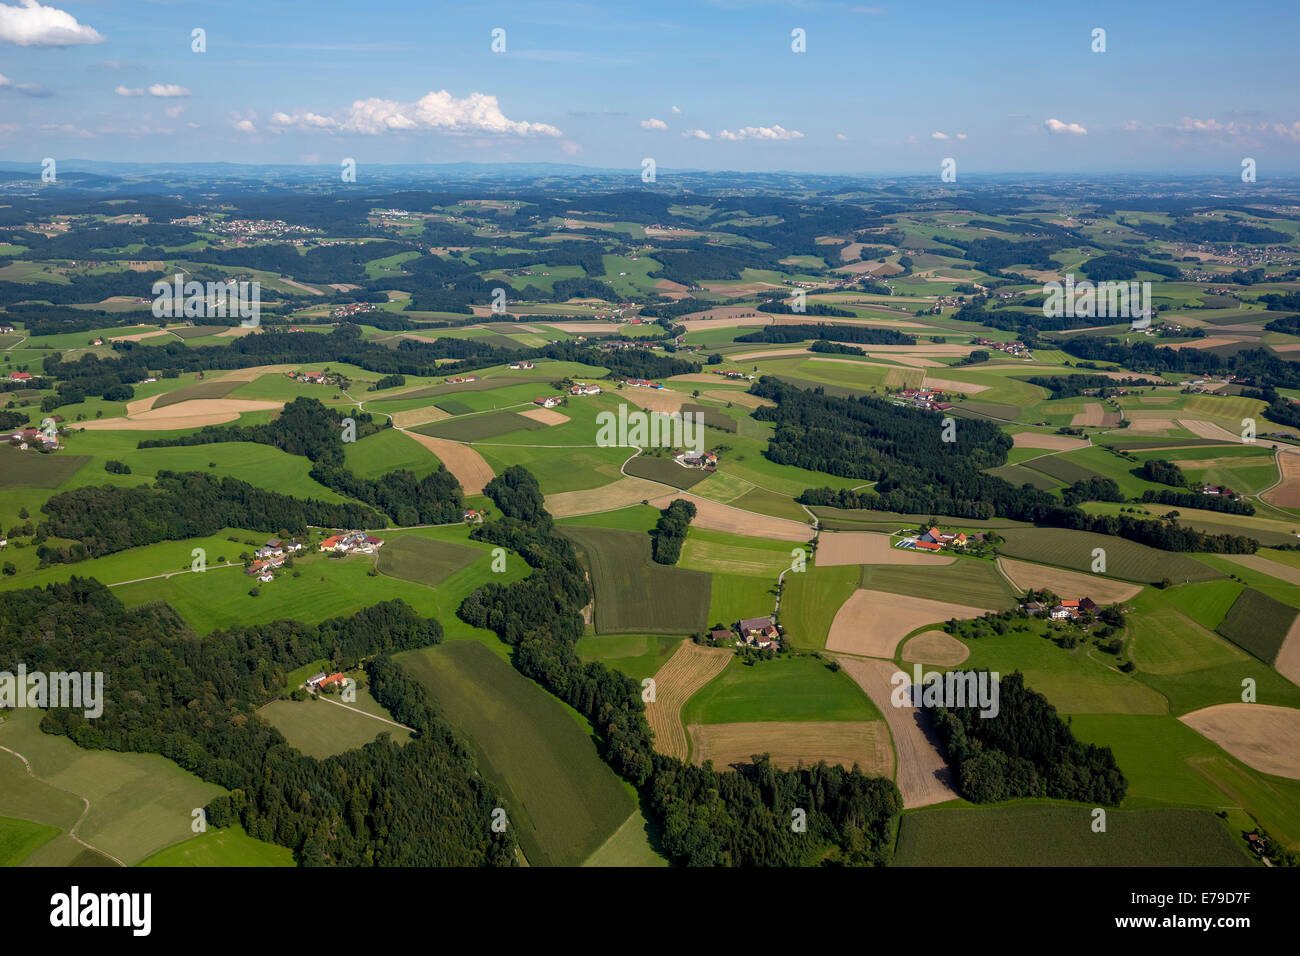 Vue aérienne, champs et prairies, montagne, alpin Taufkirchen an der Pram, Haute Autriche, Autriche Banque D'Images